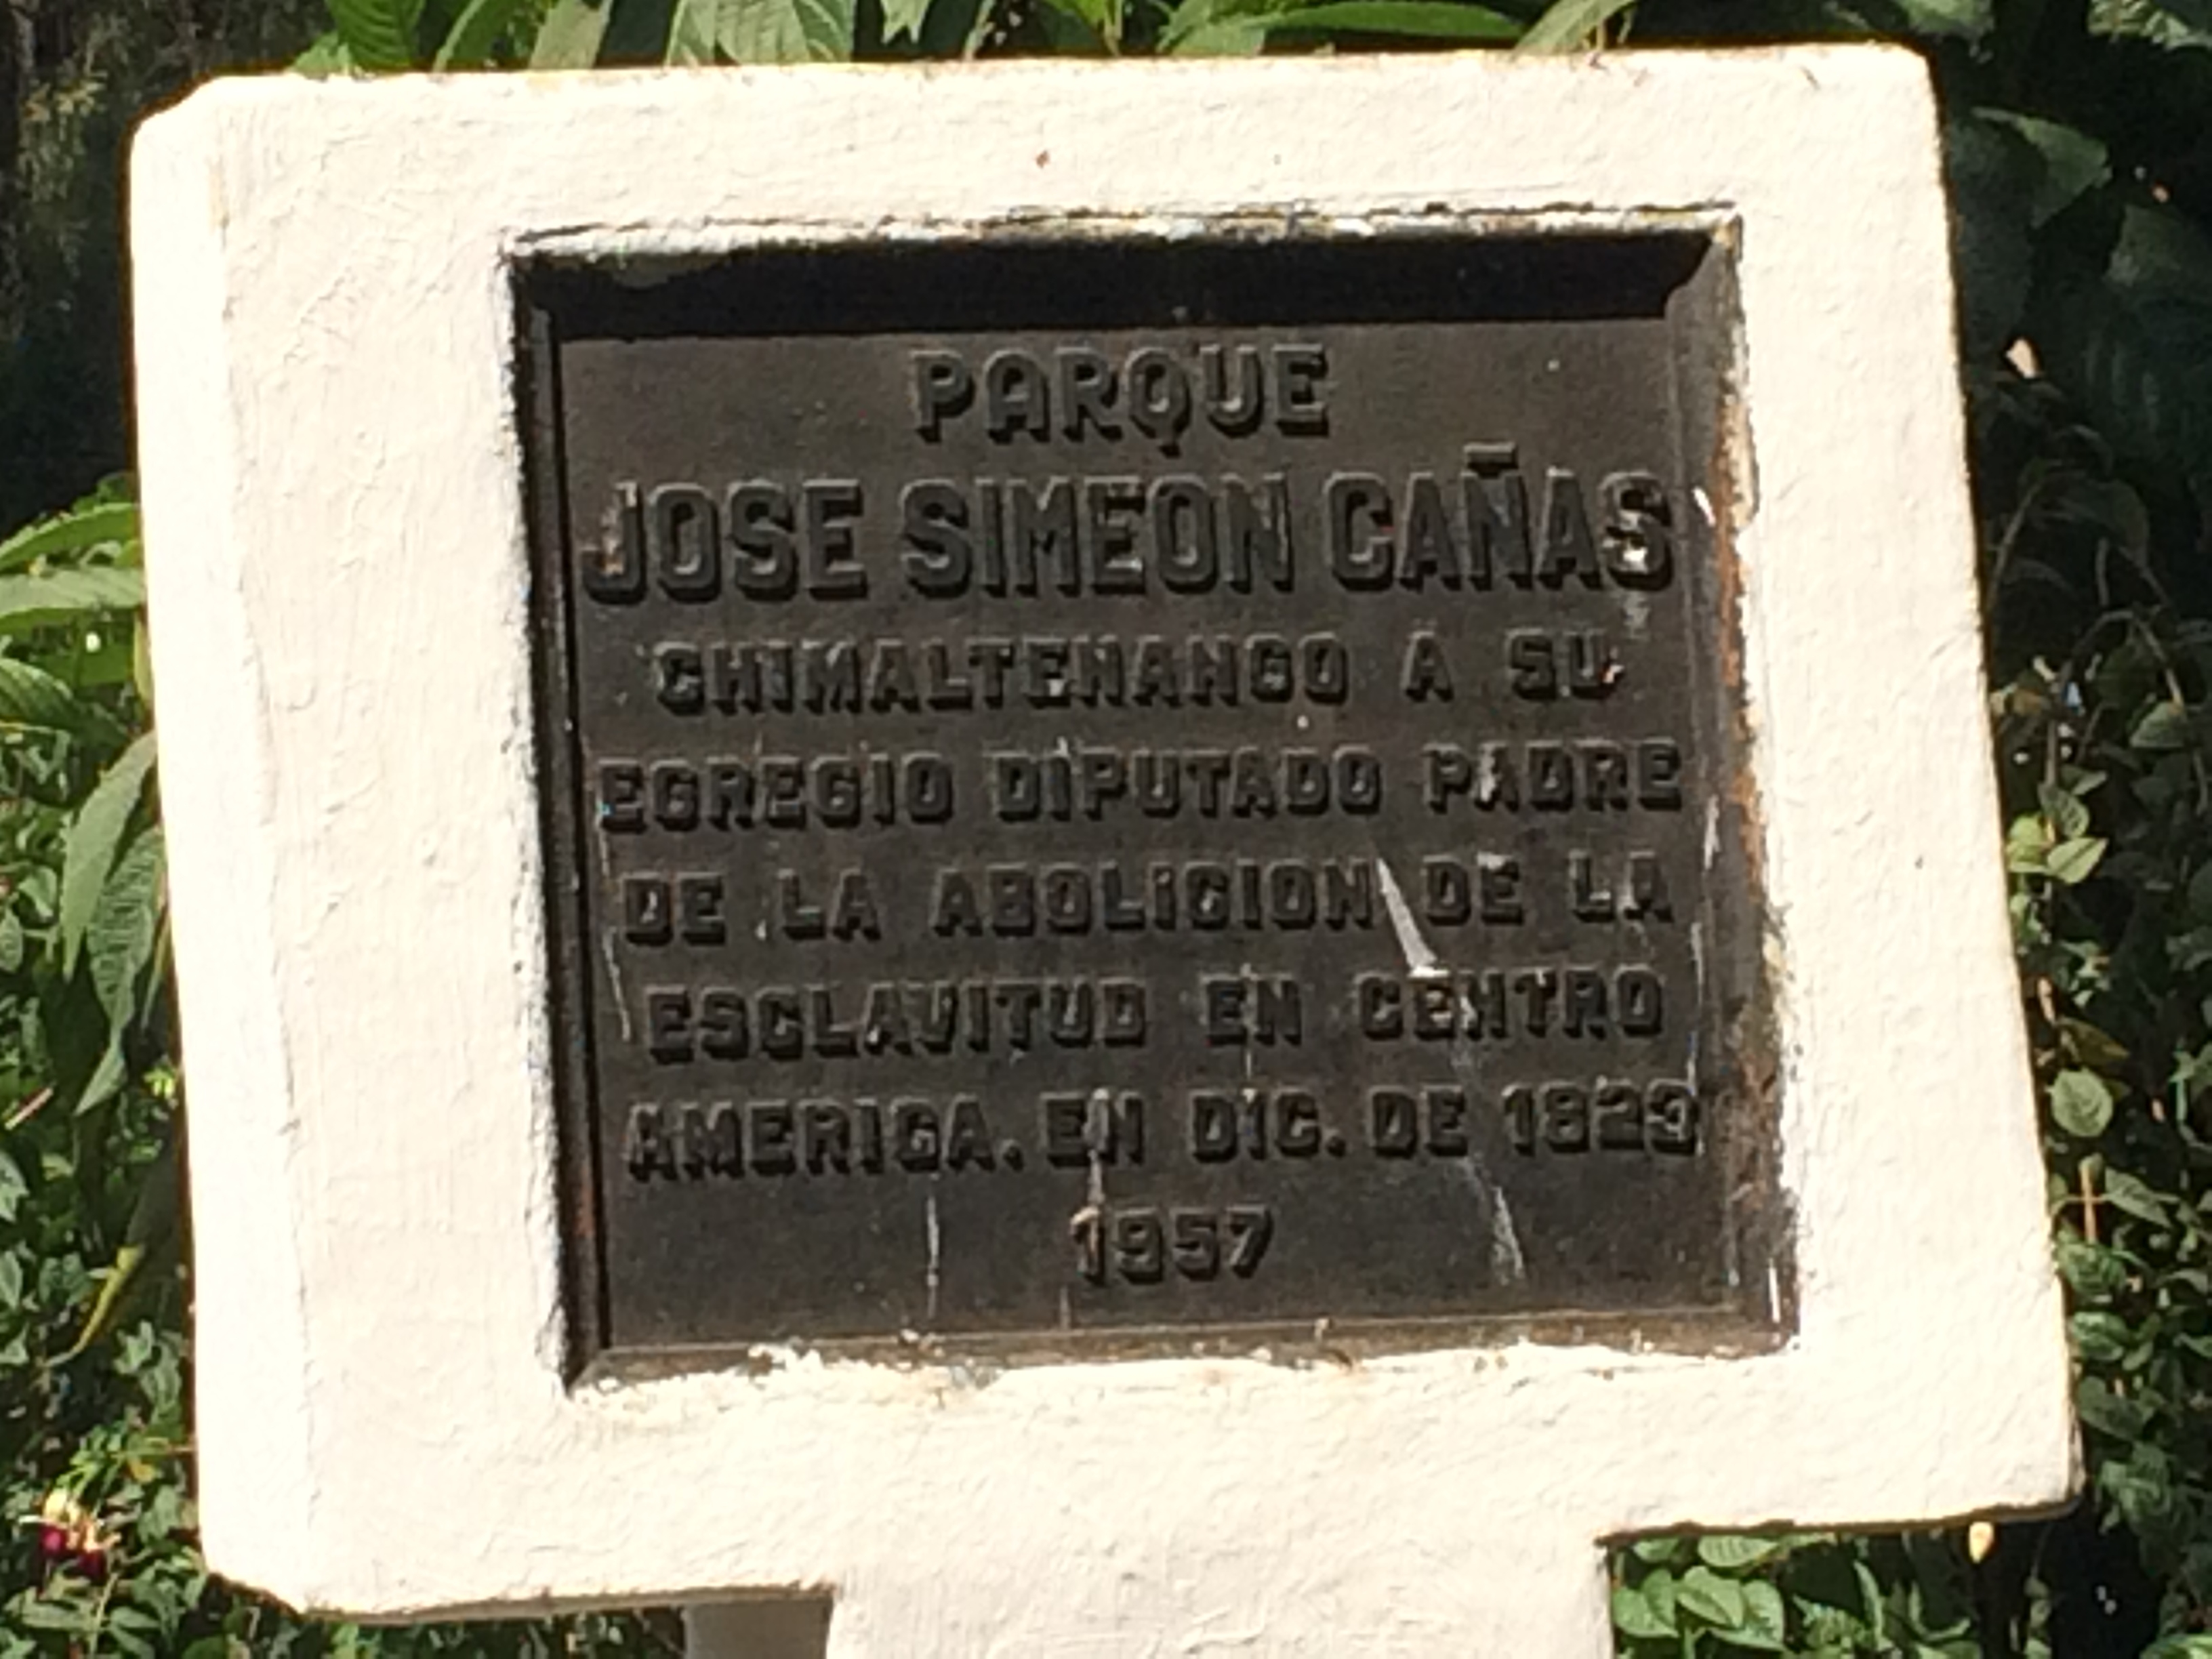 José Simeon Cañas Marker